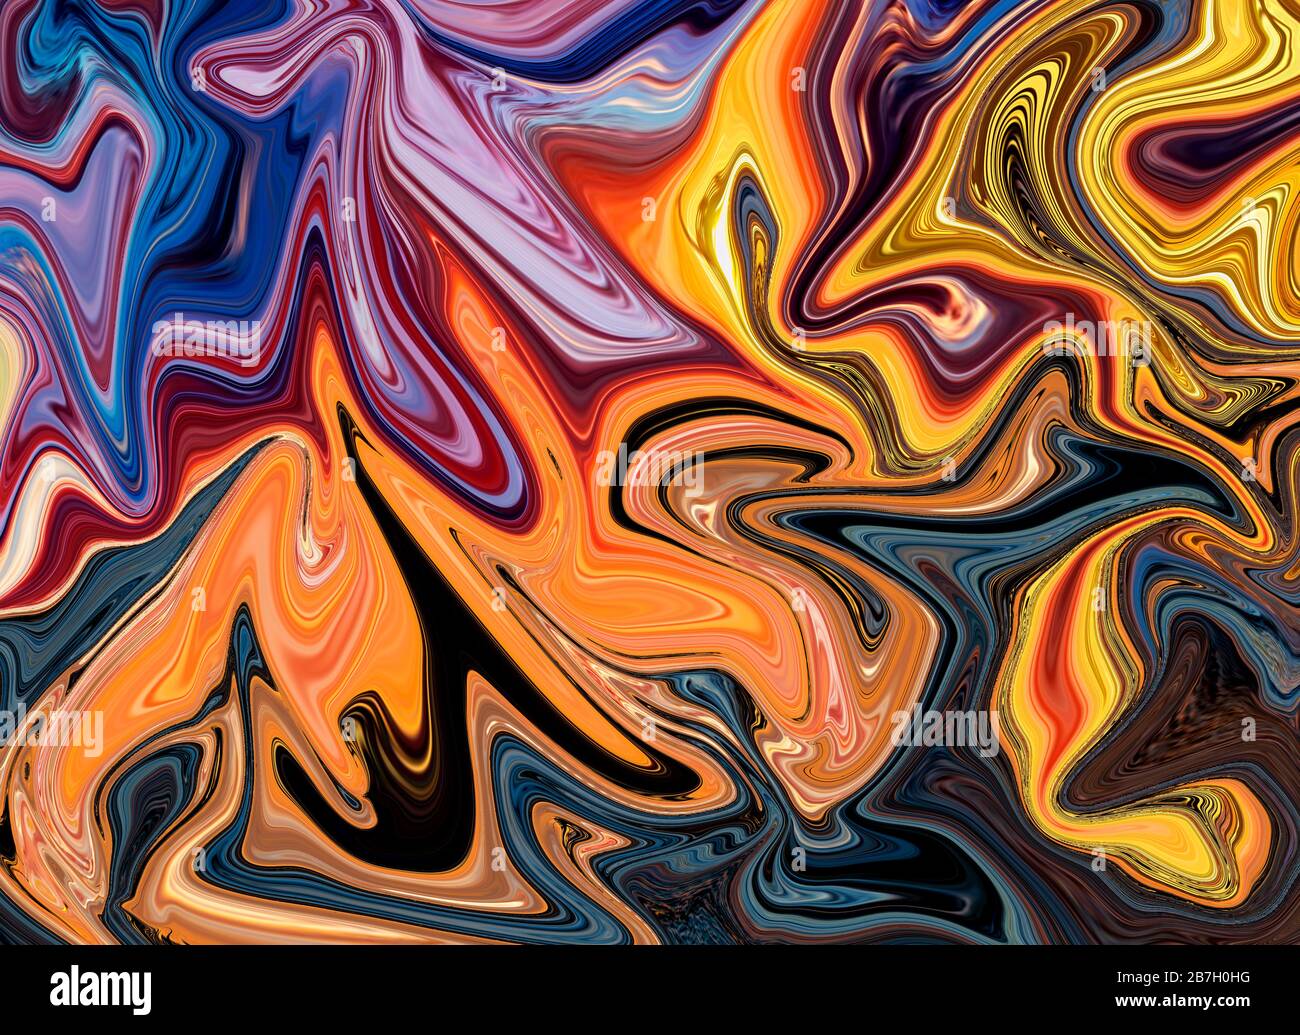 Abstrakter, Bunt-Psychedelischer Hintergrund. Flüssige, bunte Textur in der digitalen Kunst Stockfoto